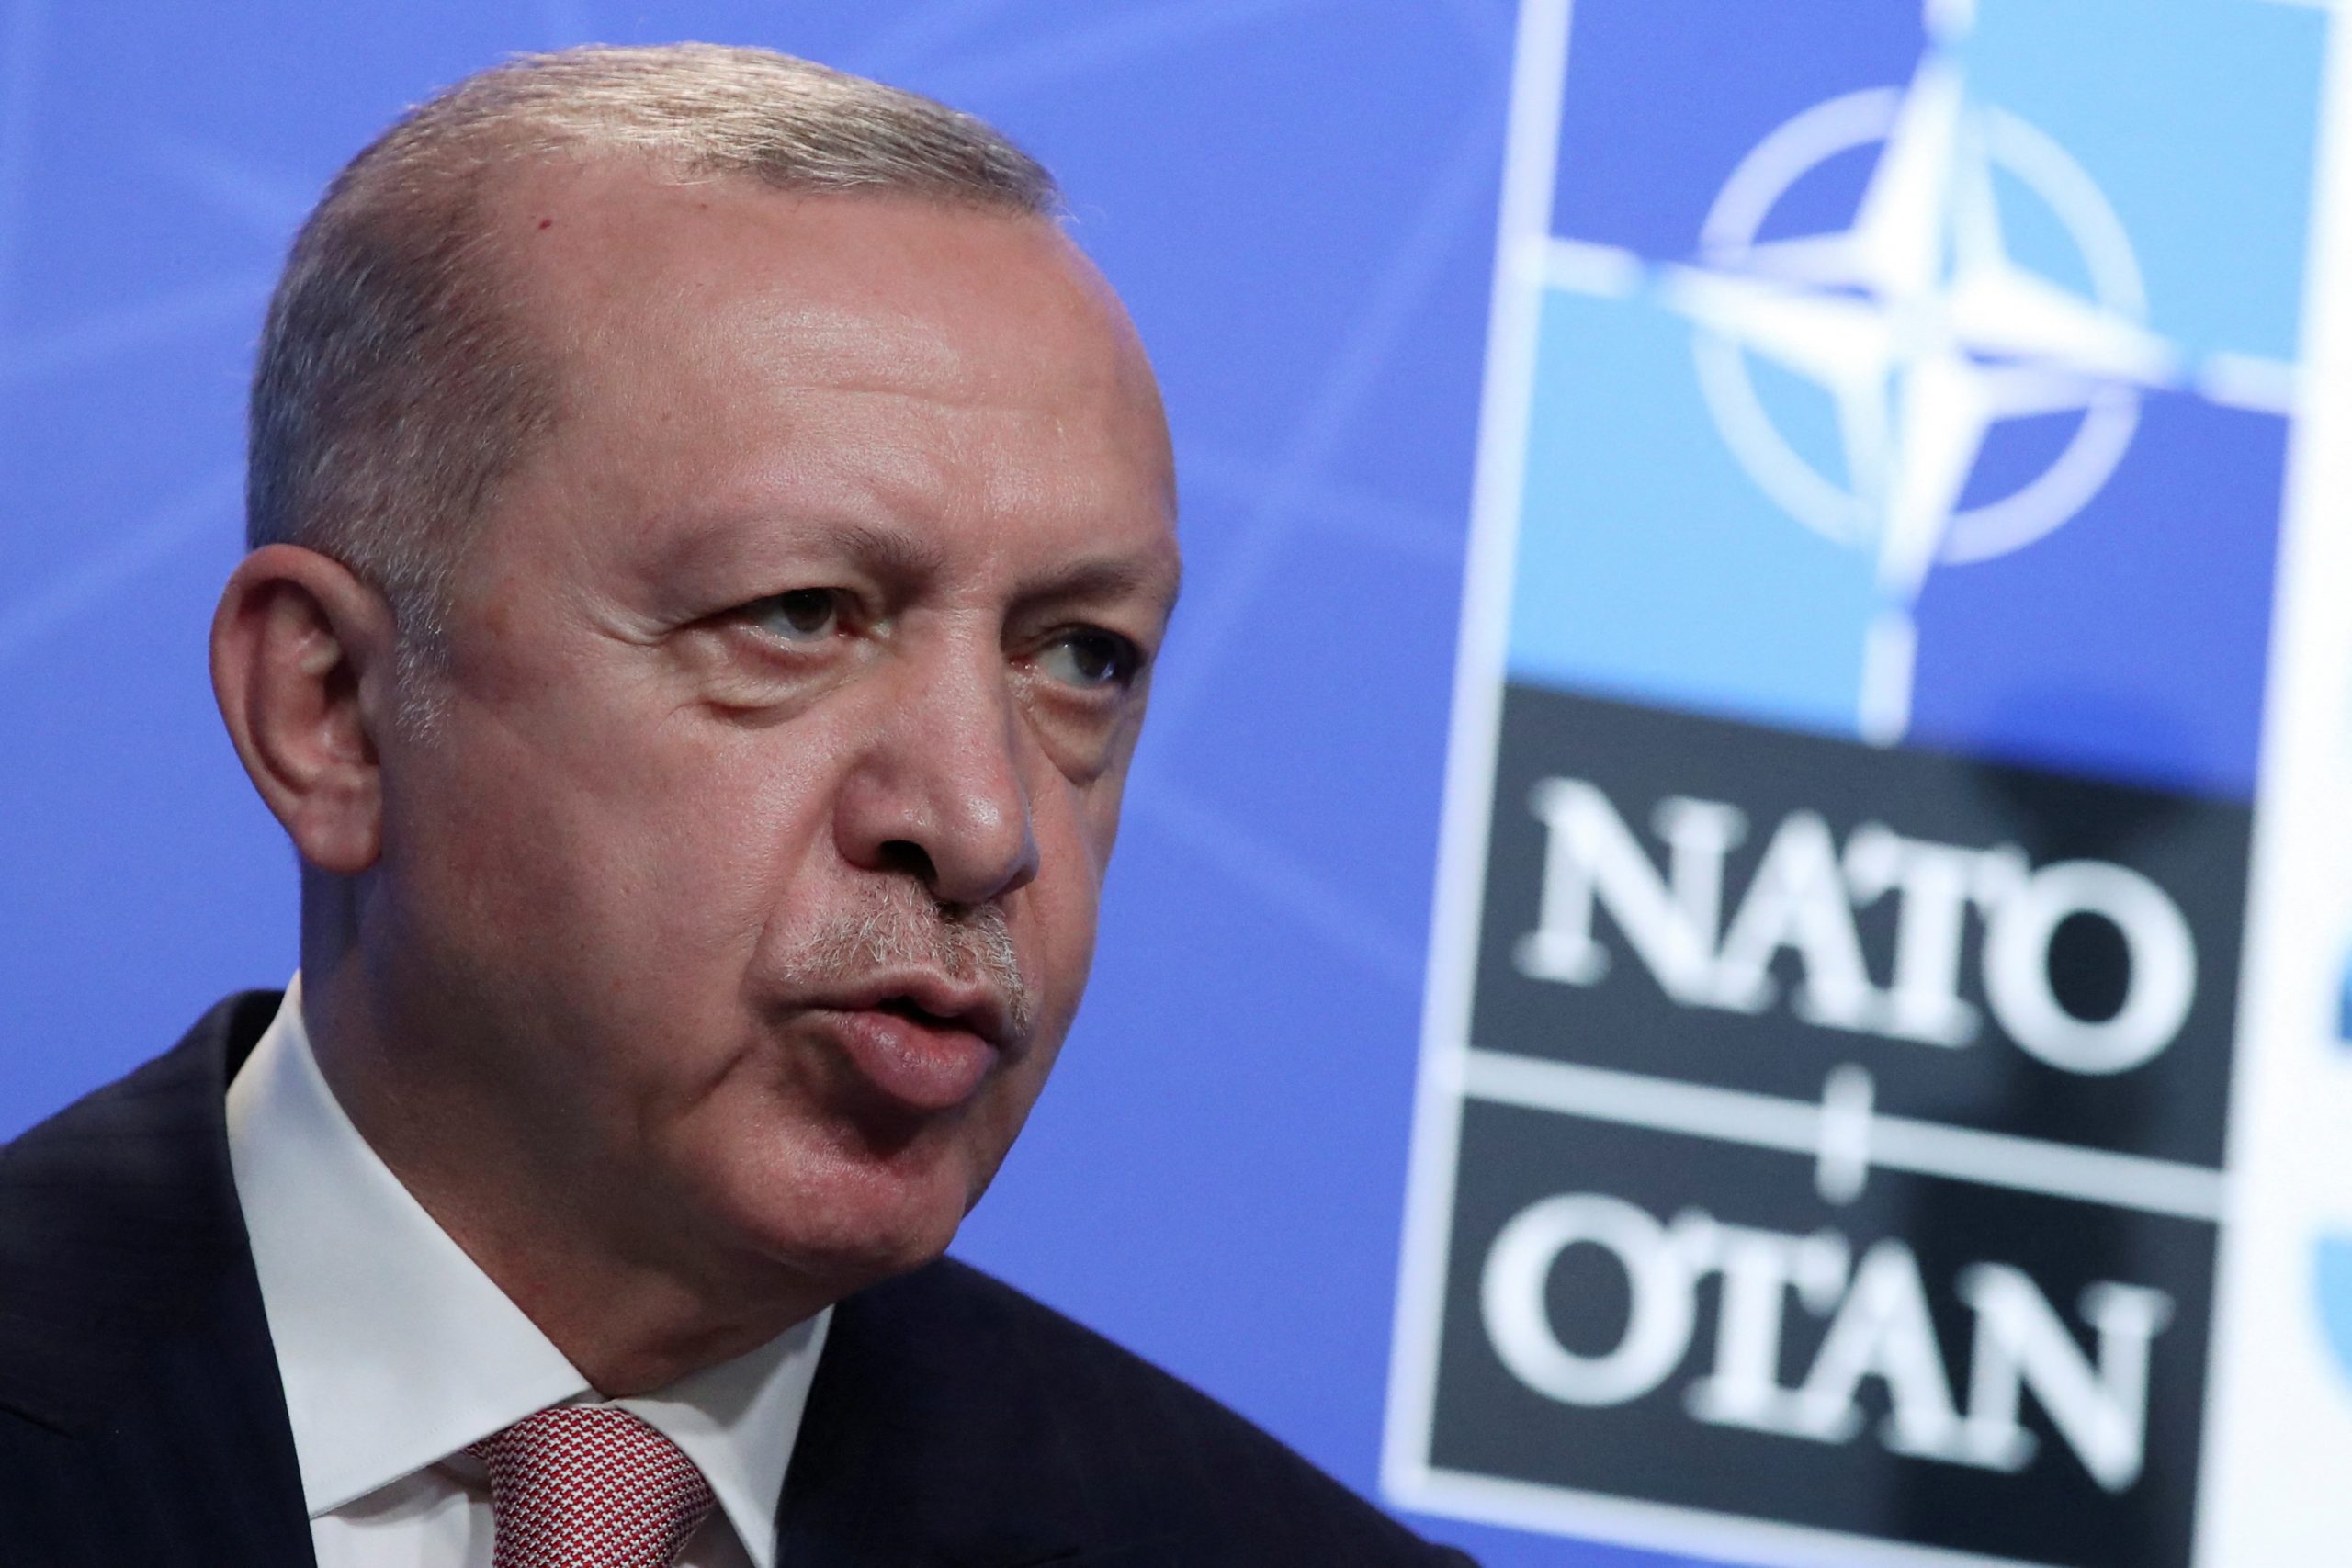 Greece has no real value in NATO: Erdogan 25